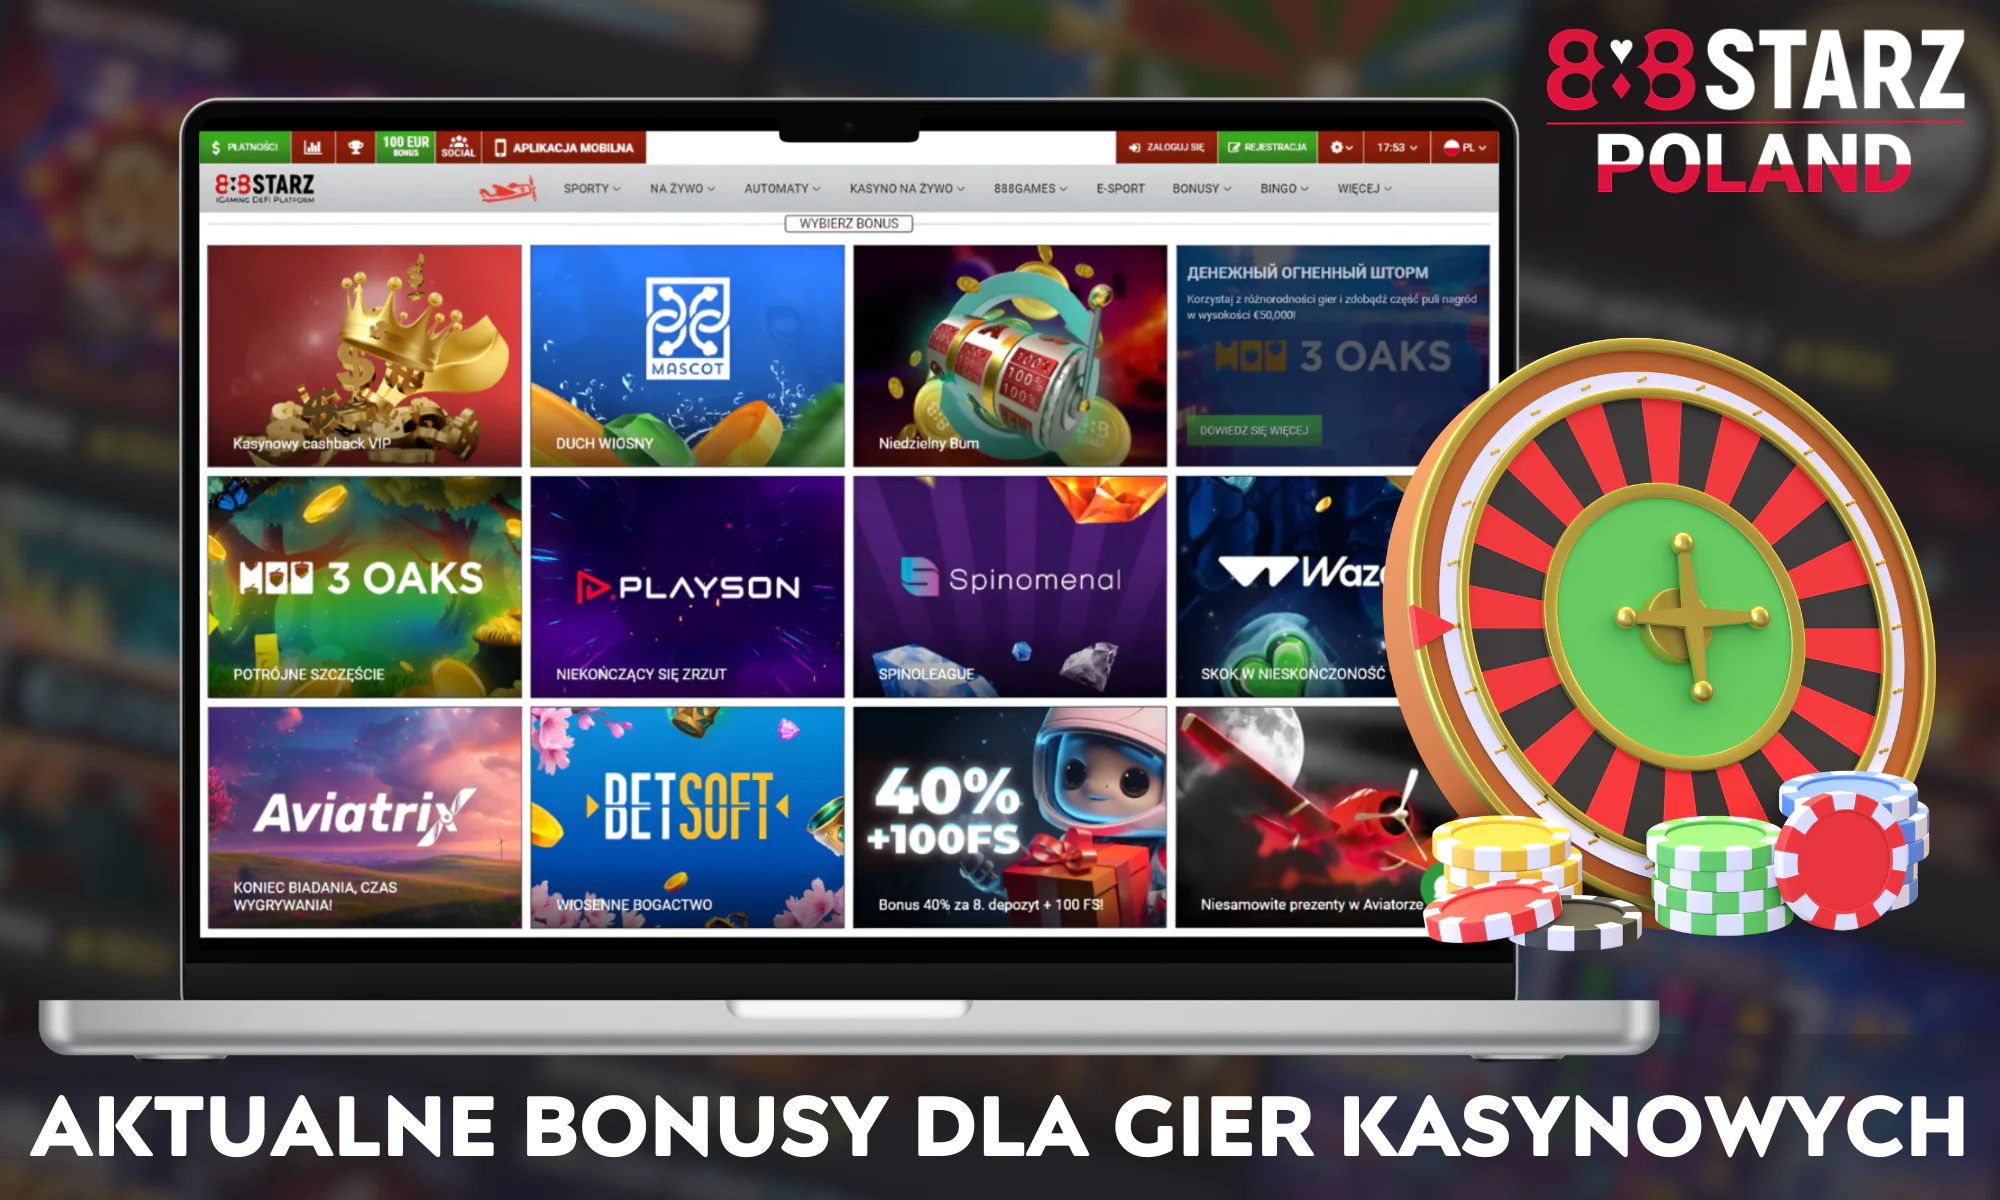 888Starz oferuje dużą liczbę różnych bonusów i promocji